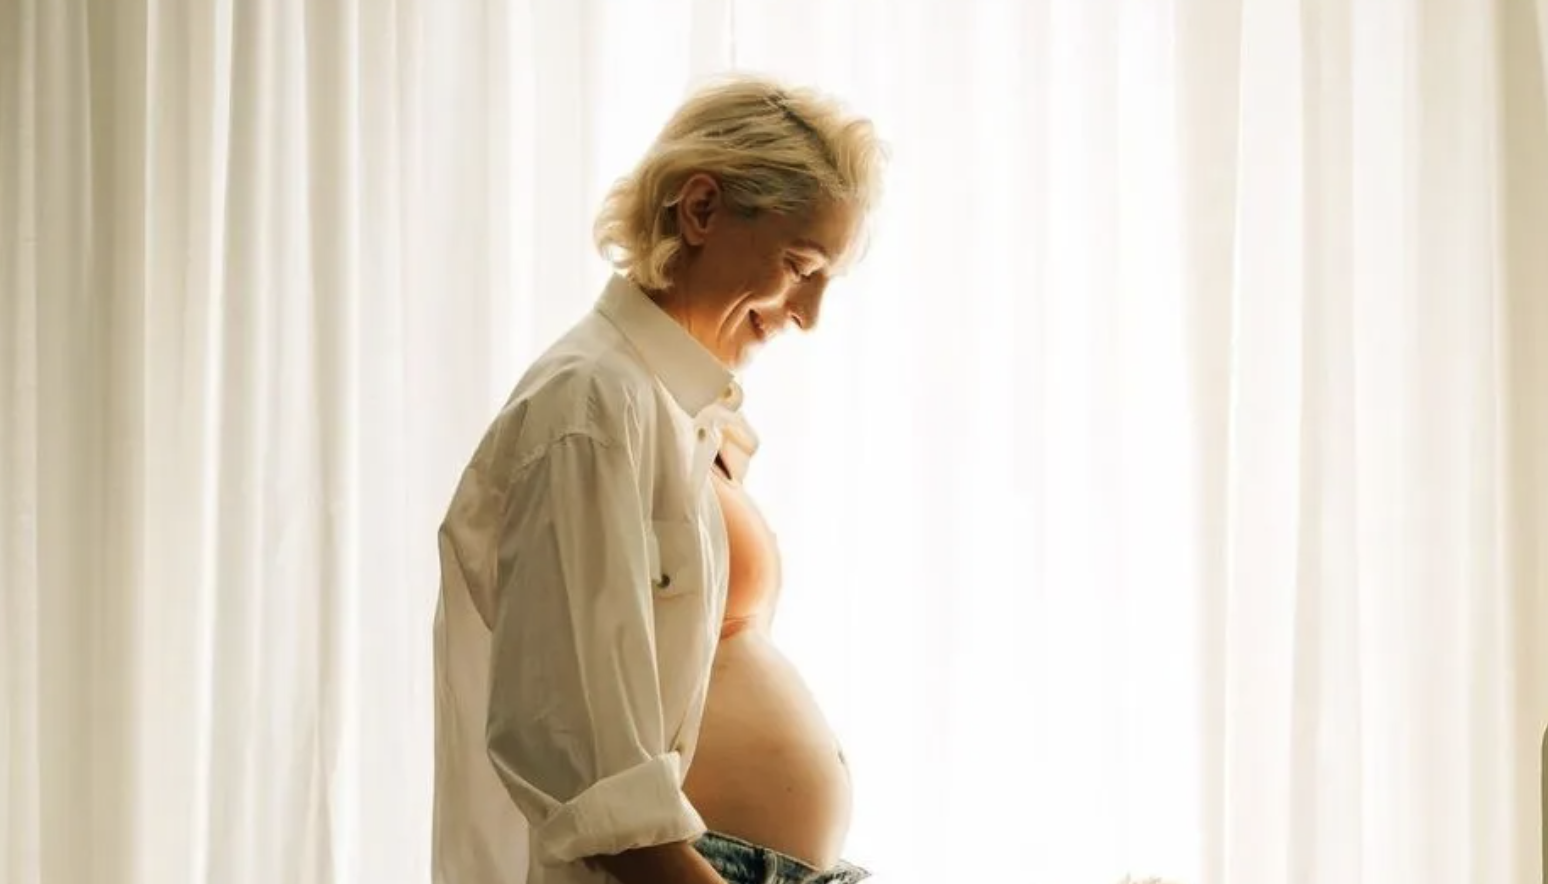 Γιούλικα Σκαφιδά: «Η εγκυμοσύνη προέκυψε συνειδητά» – Τα συναισθήματα και η ανακοίνωση στα social media